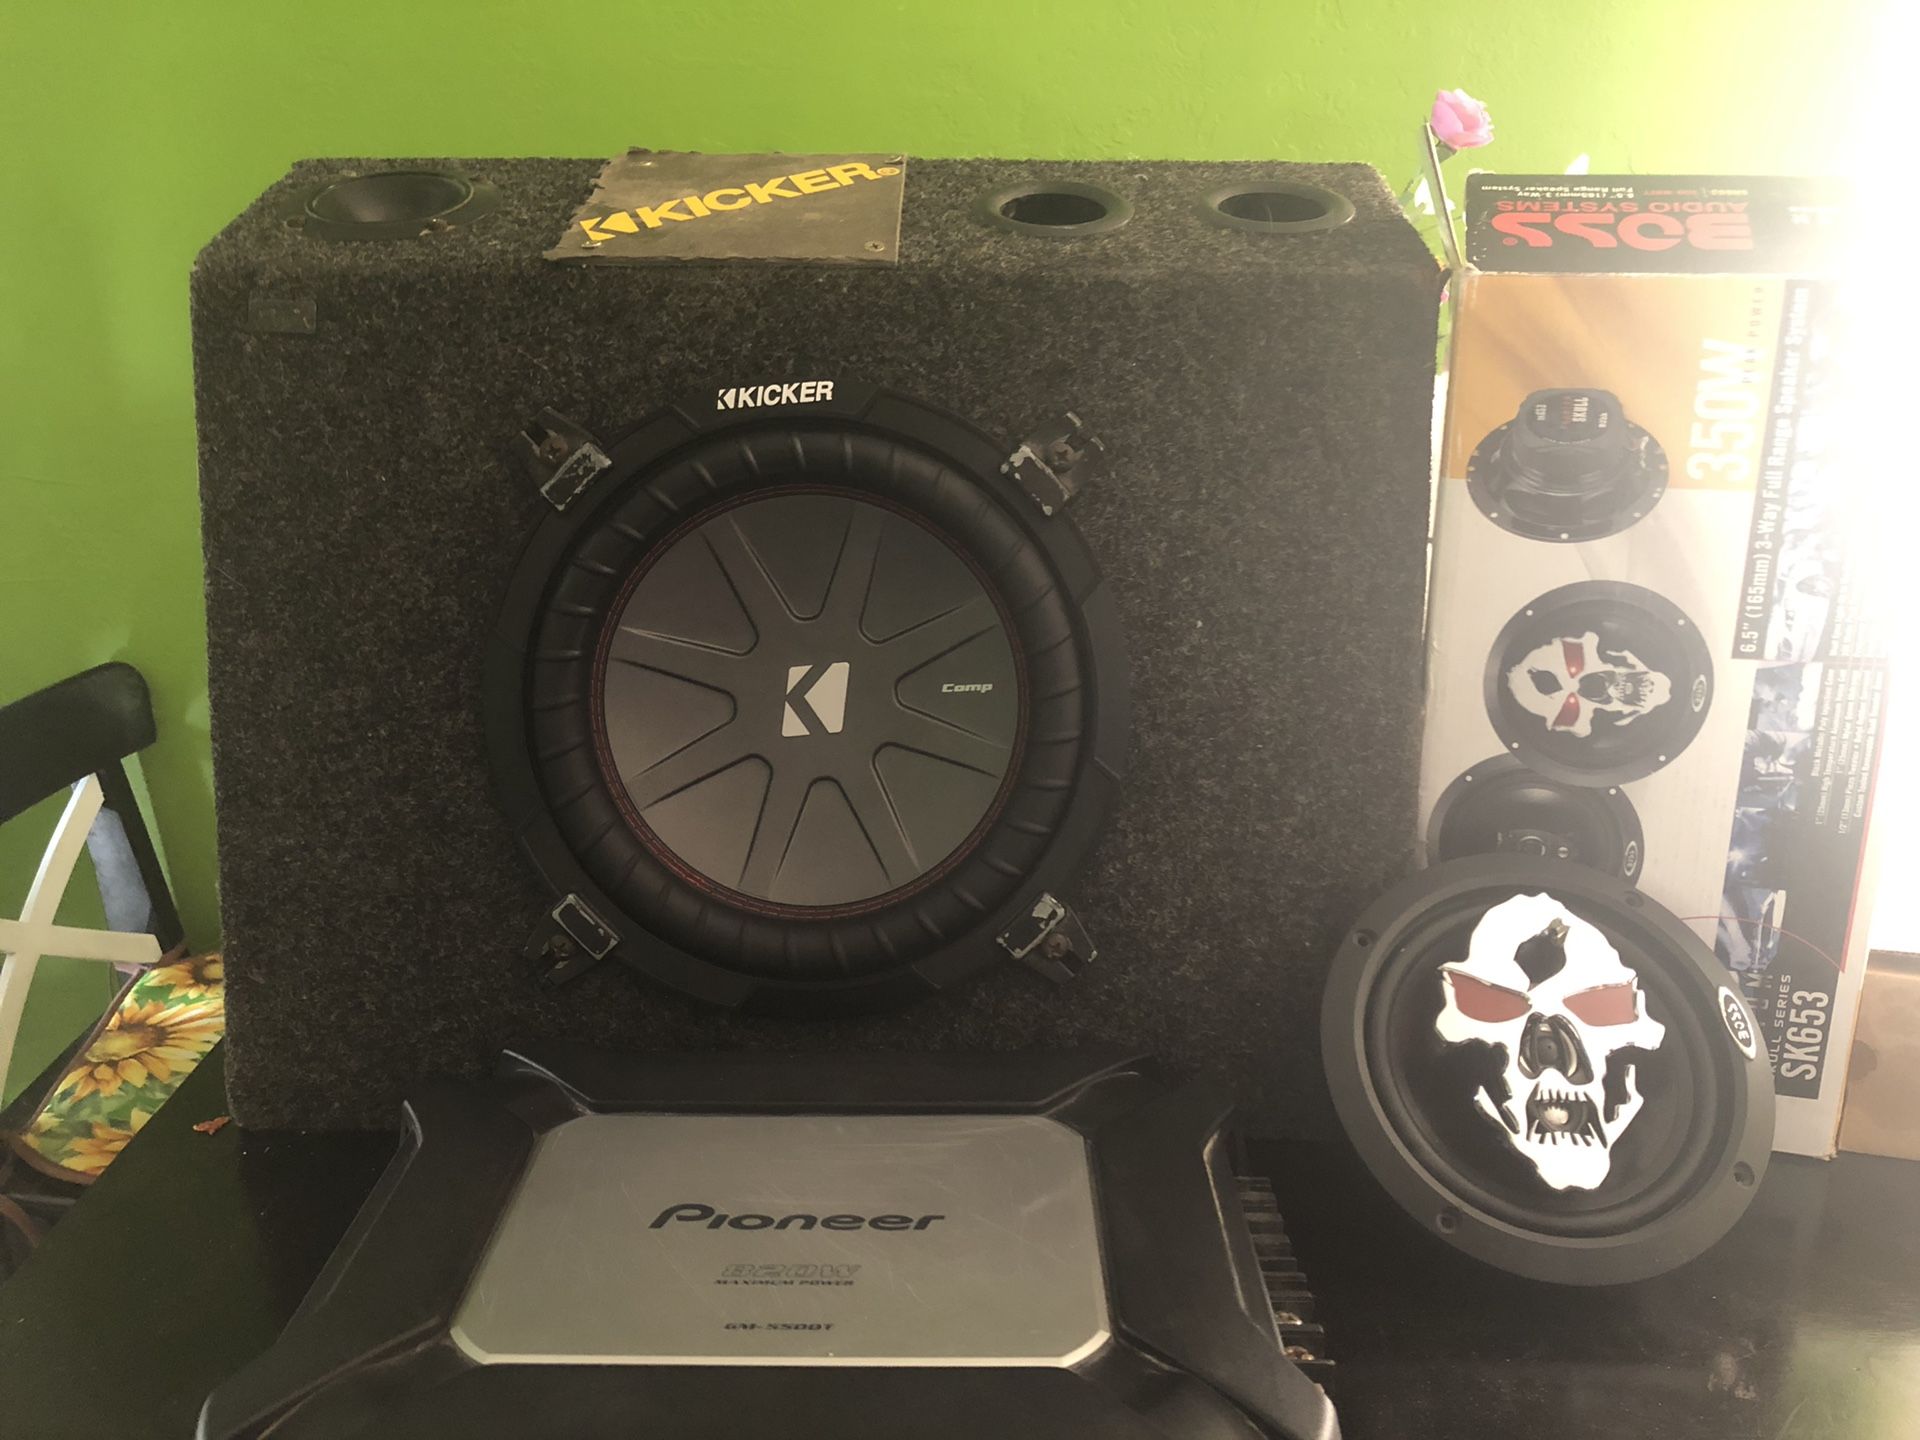 820w pioneer amplifier, boss audio speaker, 10 inch subwoofer